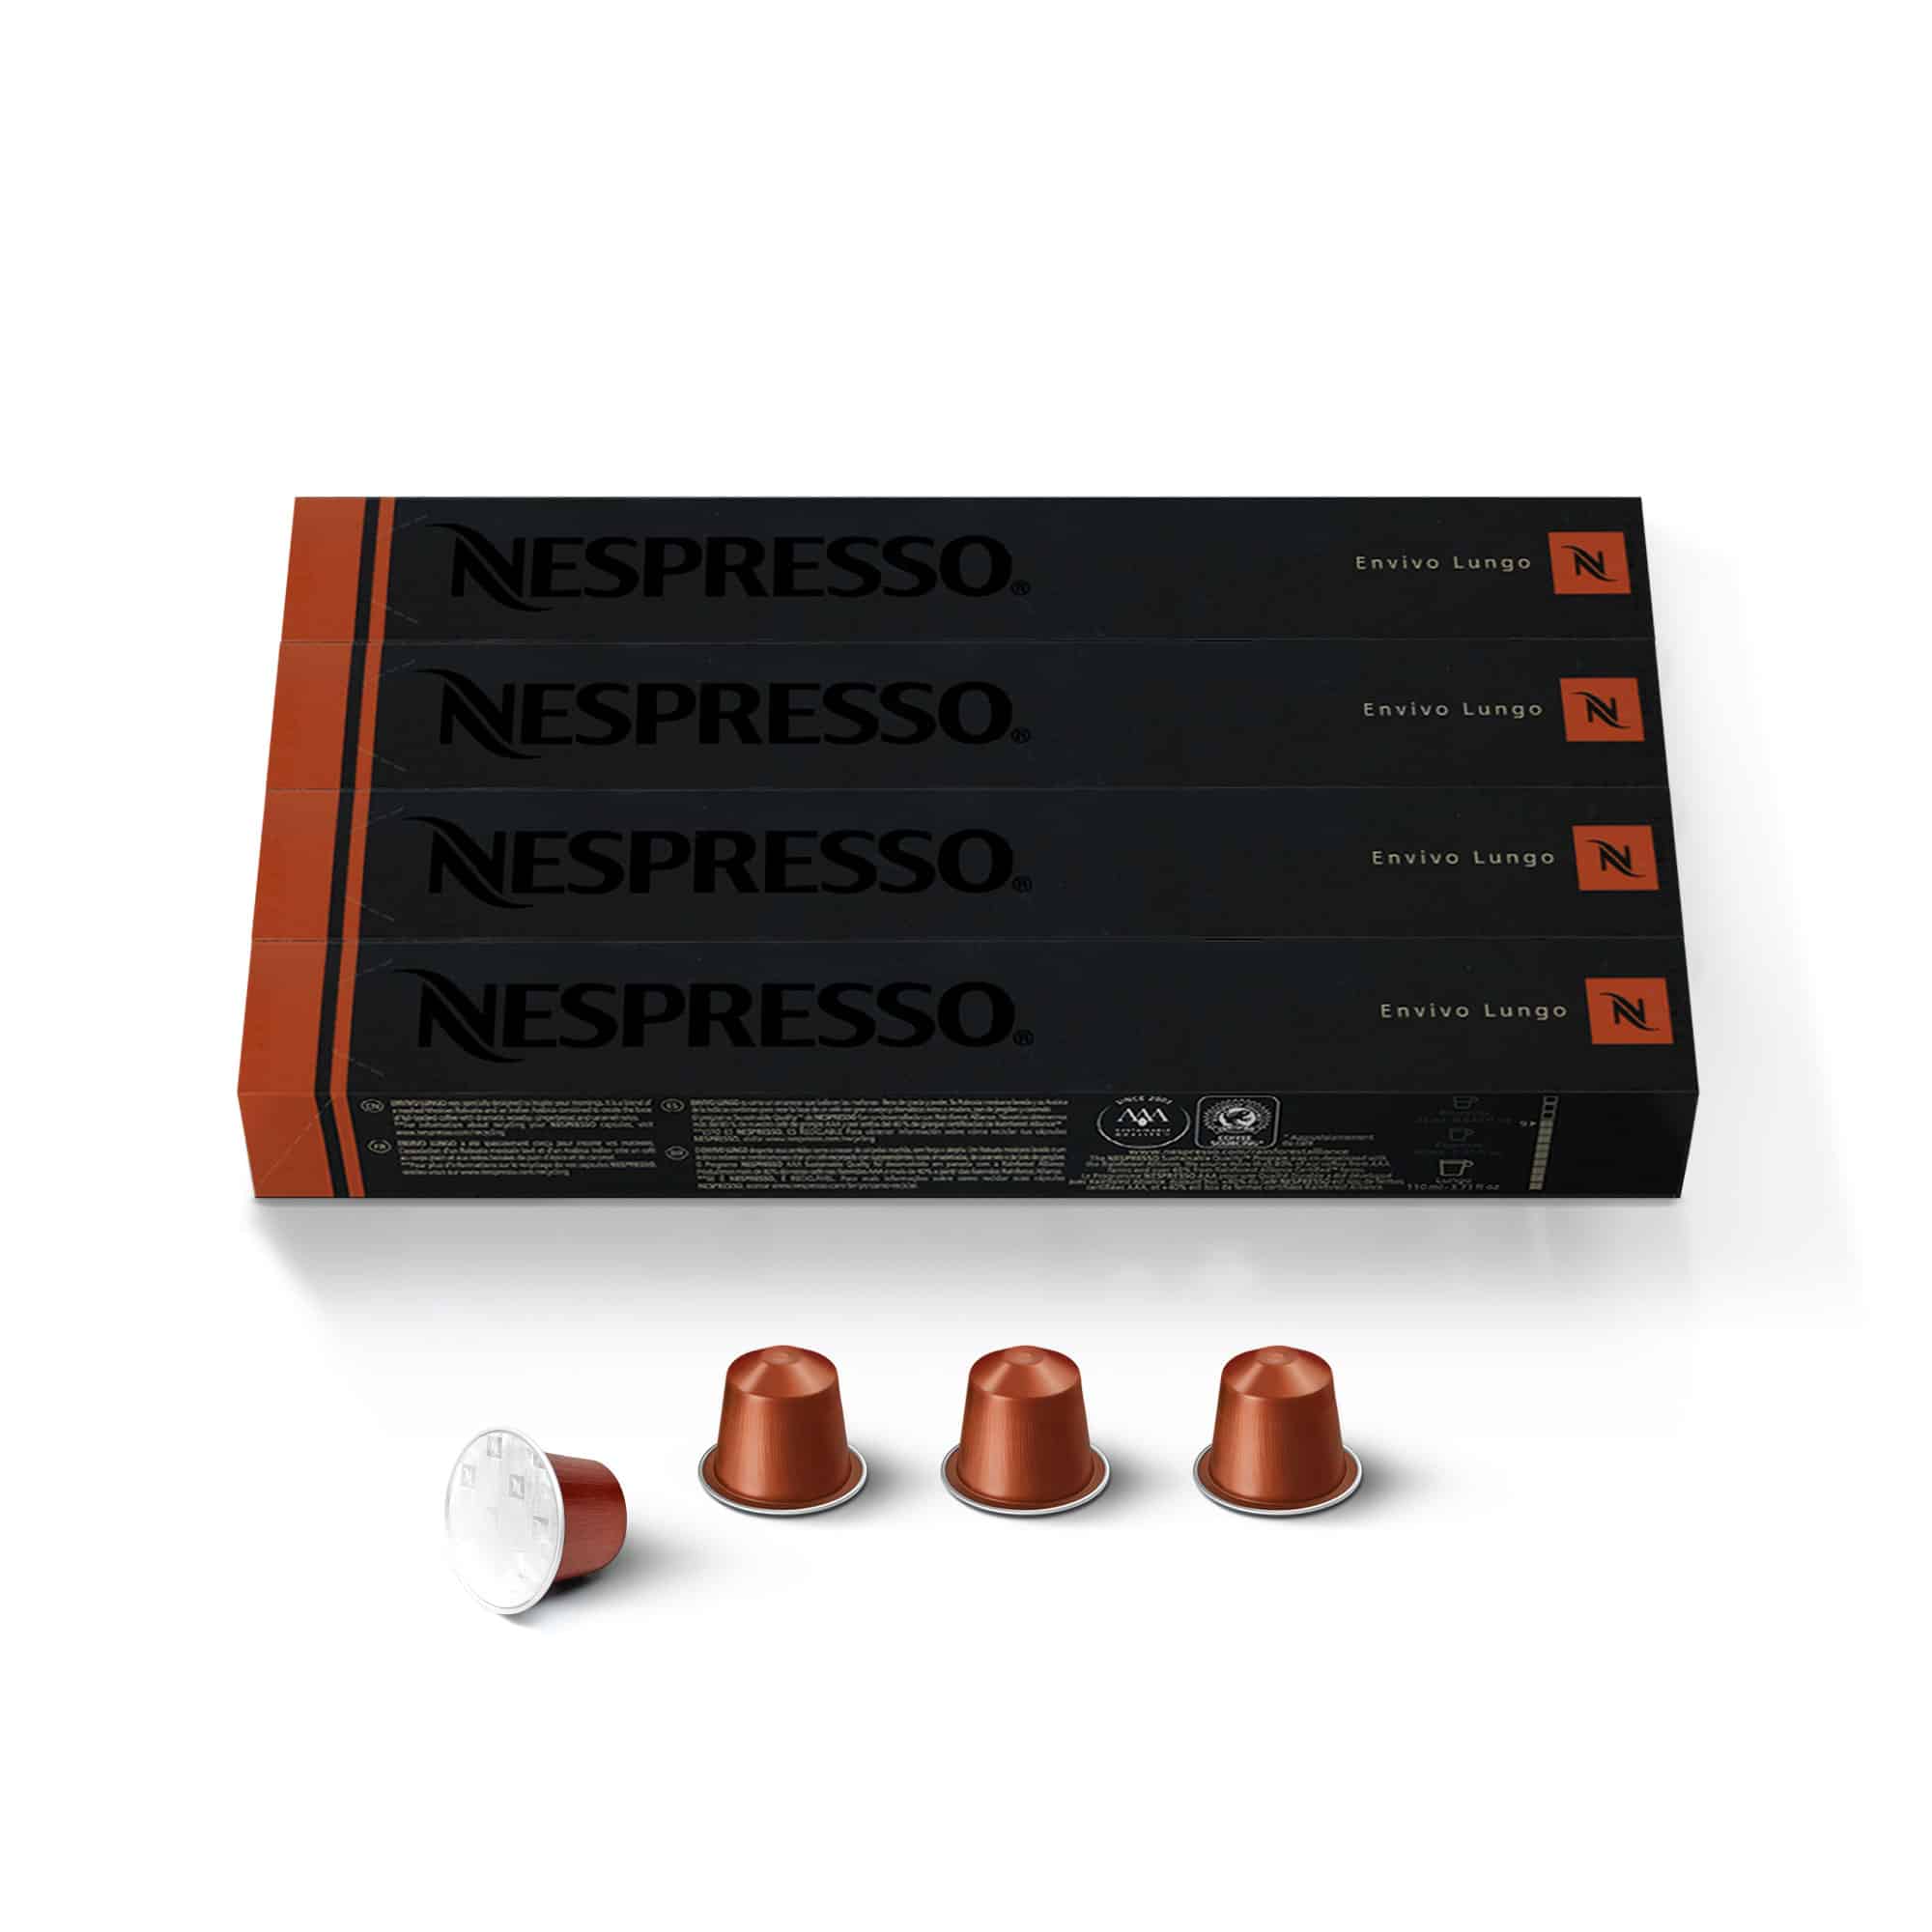 Nespresso Originalline Espresso Capsules, Envivo Lungo